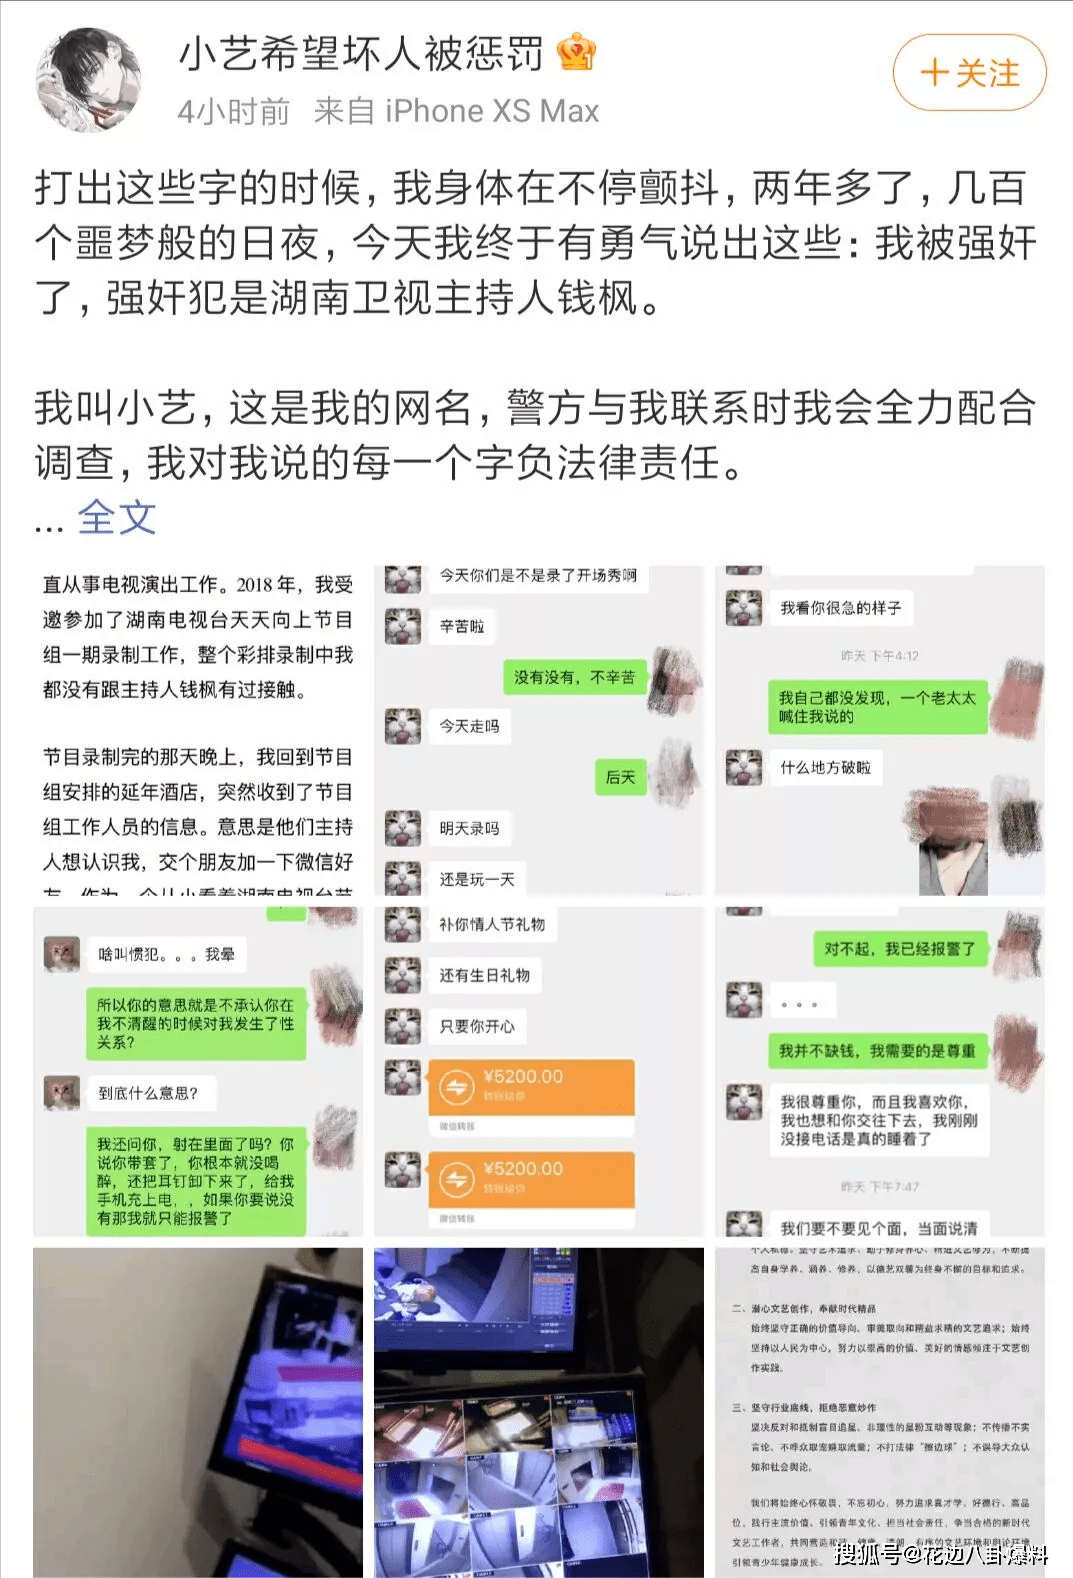 8月24日,一名自称小艺的女孩曝光了两年前钱枫强行性侵自己的内幕